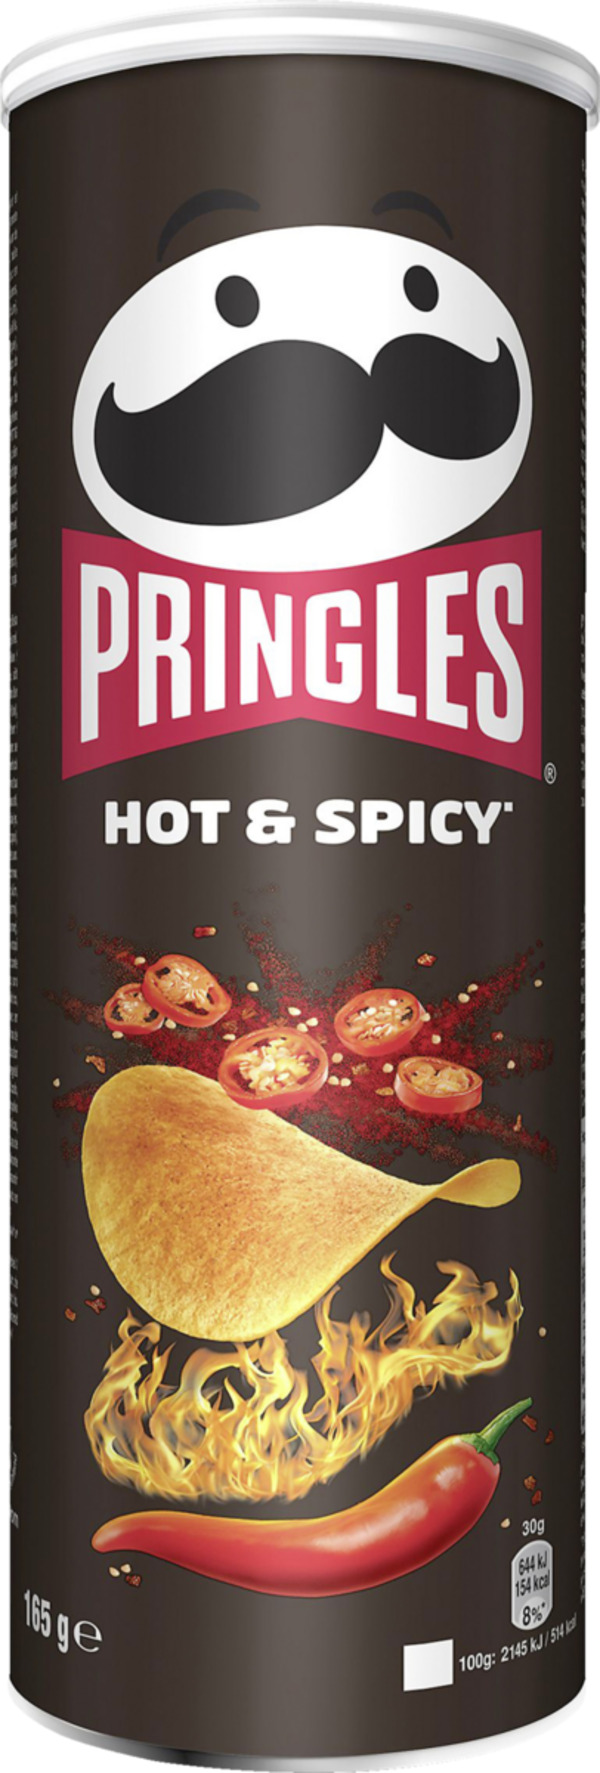 Bild 1 von Pringles Hot & Spicy Chips, 165 g